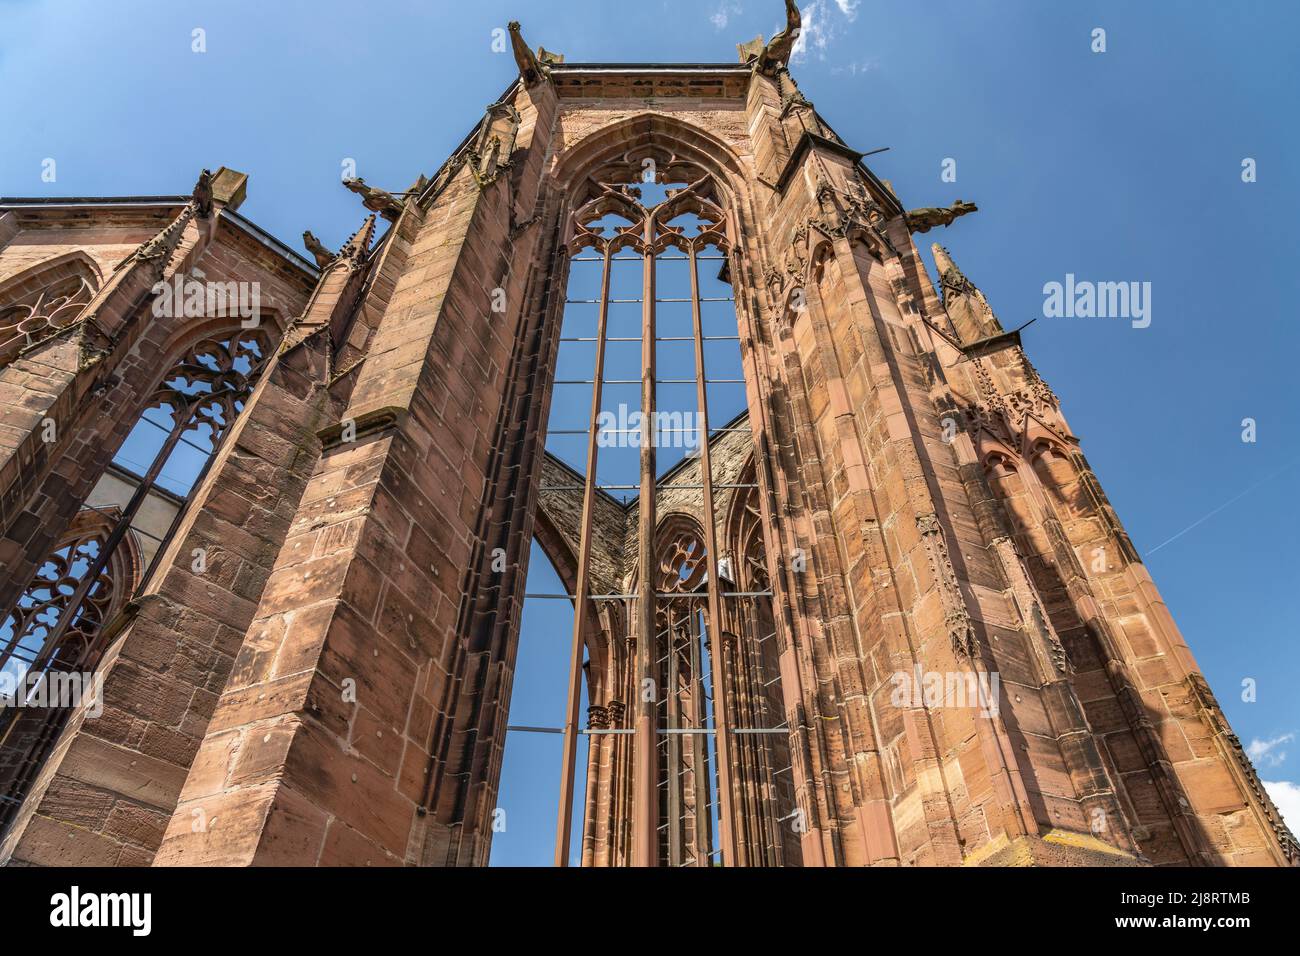 Die Ruine der gotischen Wernerkapelle in Bacharach, Welterbe Oberes Mittelrheintal, Rheinland-Pfalz, Deutschland   | Gothic  Wernerkapelle ruins in Ba Stock Photo